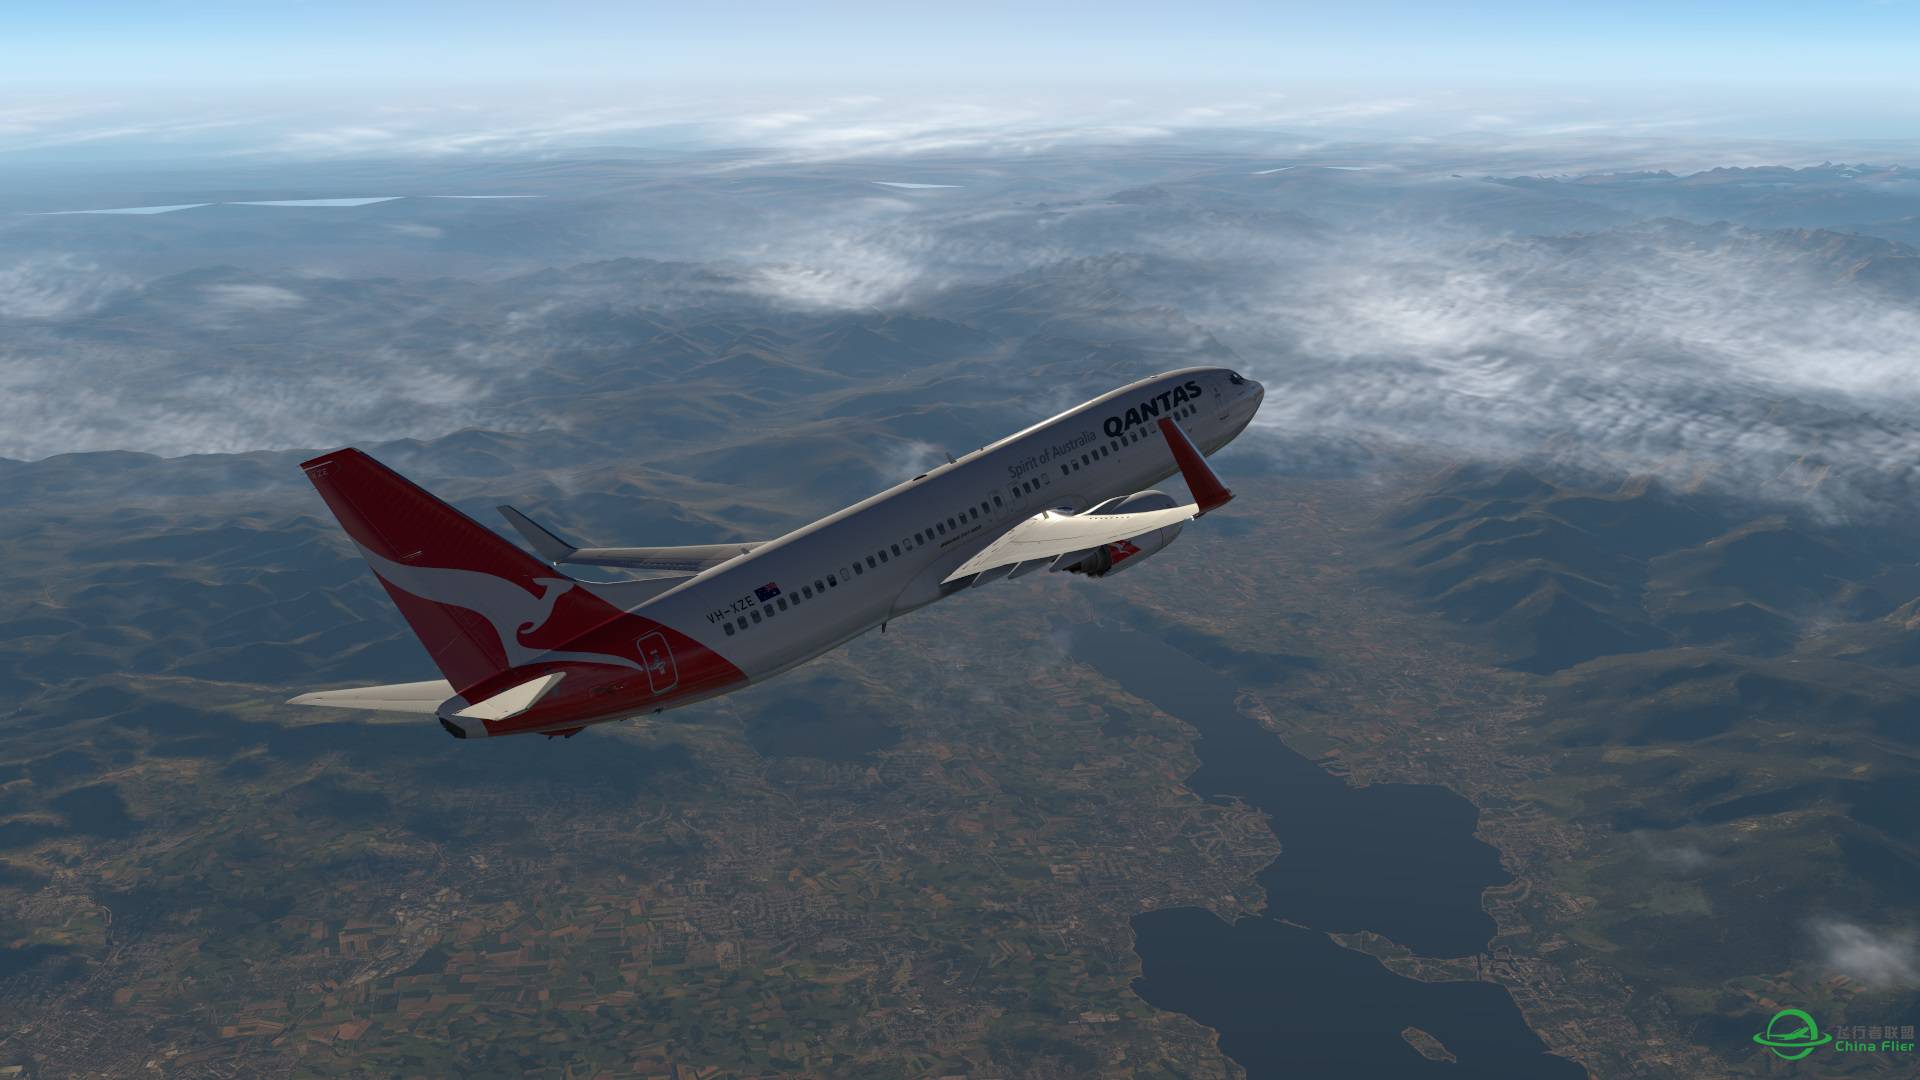 飞跃阿尔卑斯山 X-plane 11-2066 